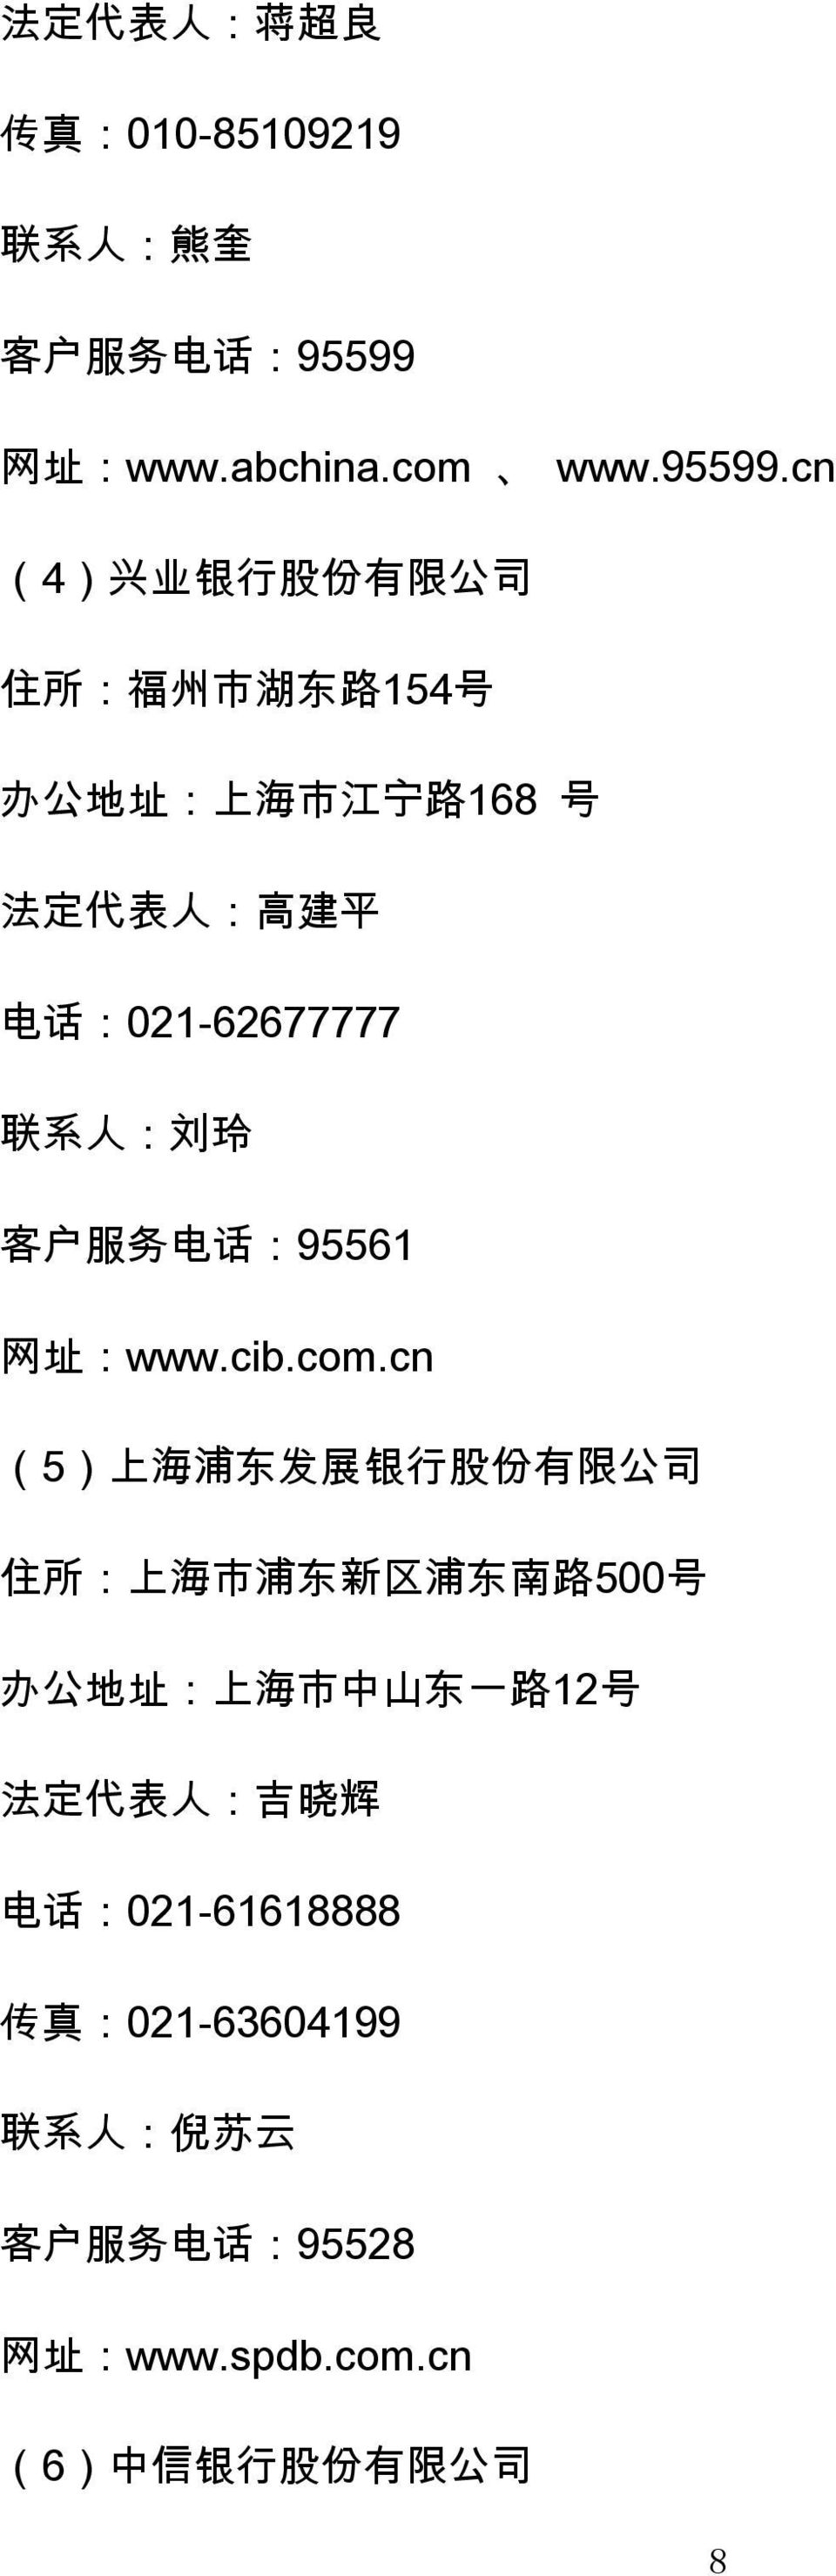 cn (4) 兴 业 银 行 股 份 有 限 公 司 住 所 : 福 州 市 湖 东 路 154 号 办 公 地 址 : 上 海 市 江 宁 路 168 号 法 定 代 表 人 : 高 建 平 电 话 :021-62677777 联 系 人 :